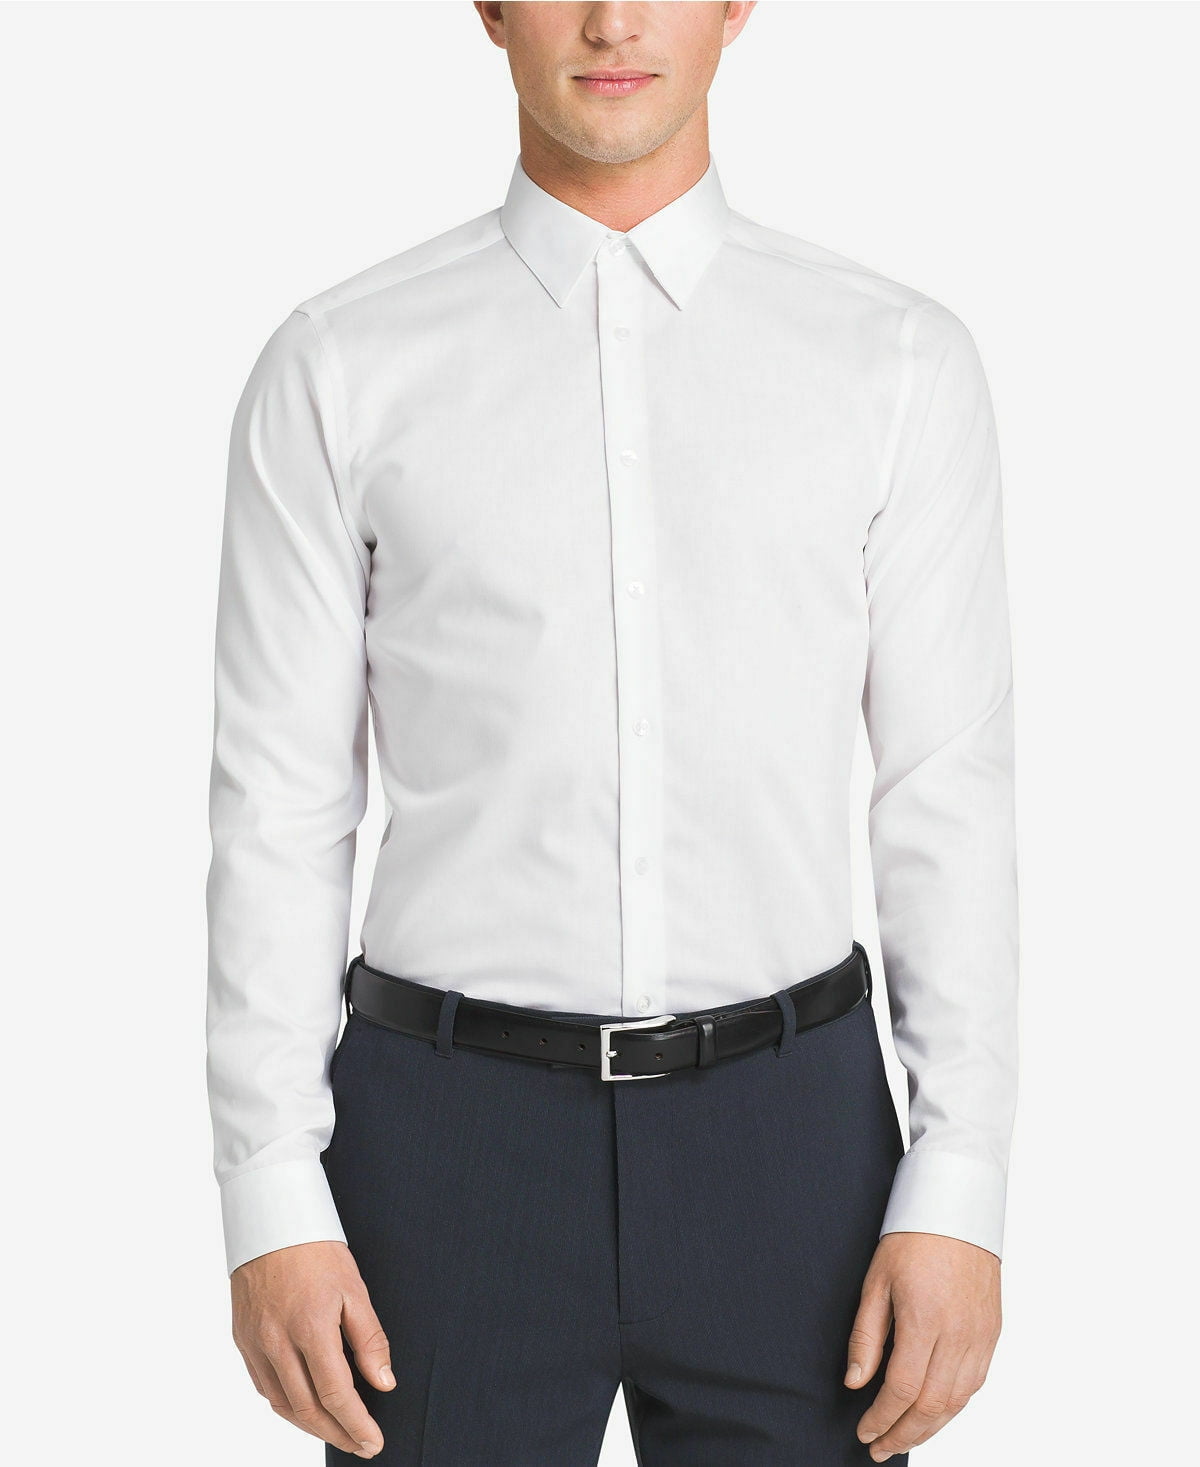 College Nebu Doorzichtig Calvin Klein Men's Dress Shirt Slim Fit, Large, 16.5 36/37, White - NEW -  Walmart.com